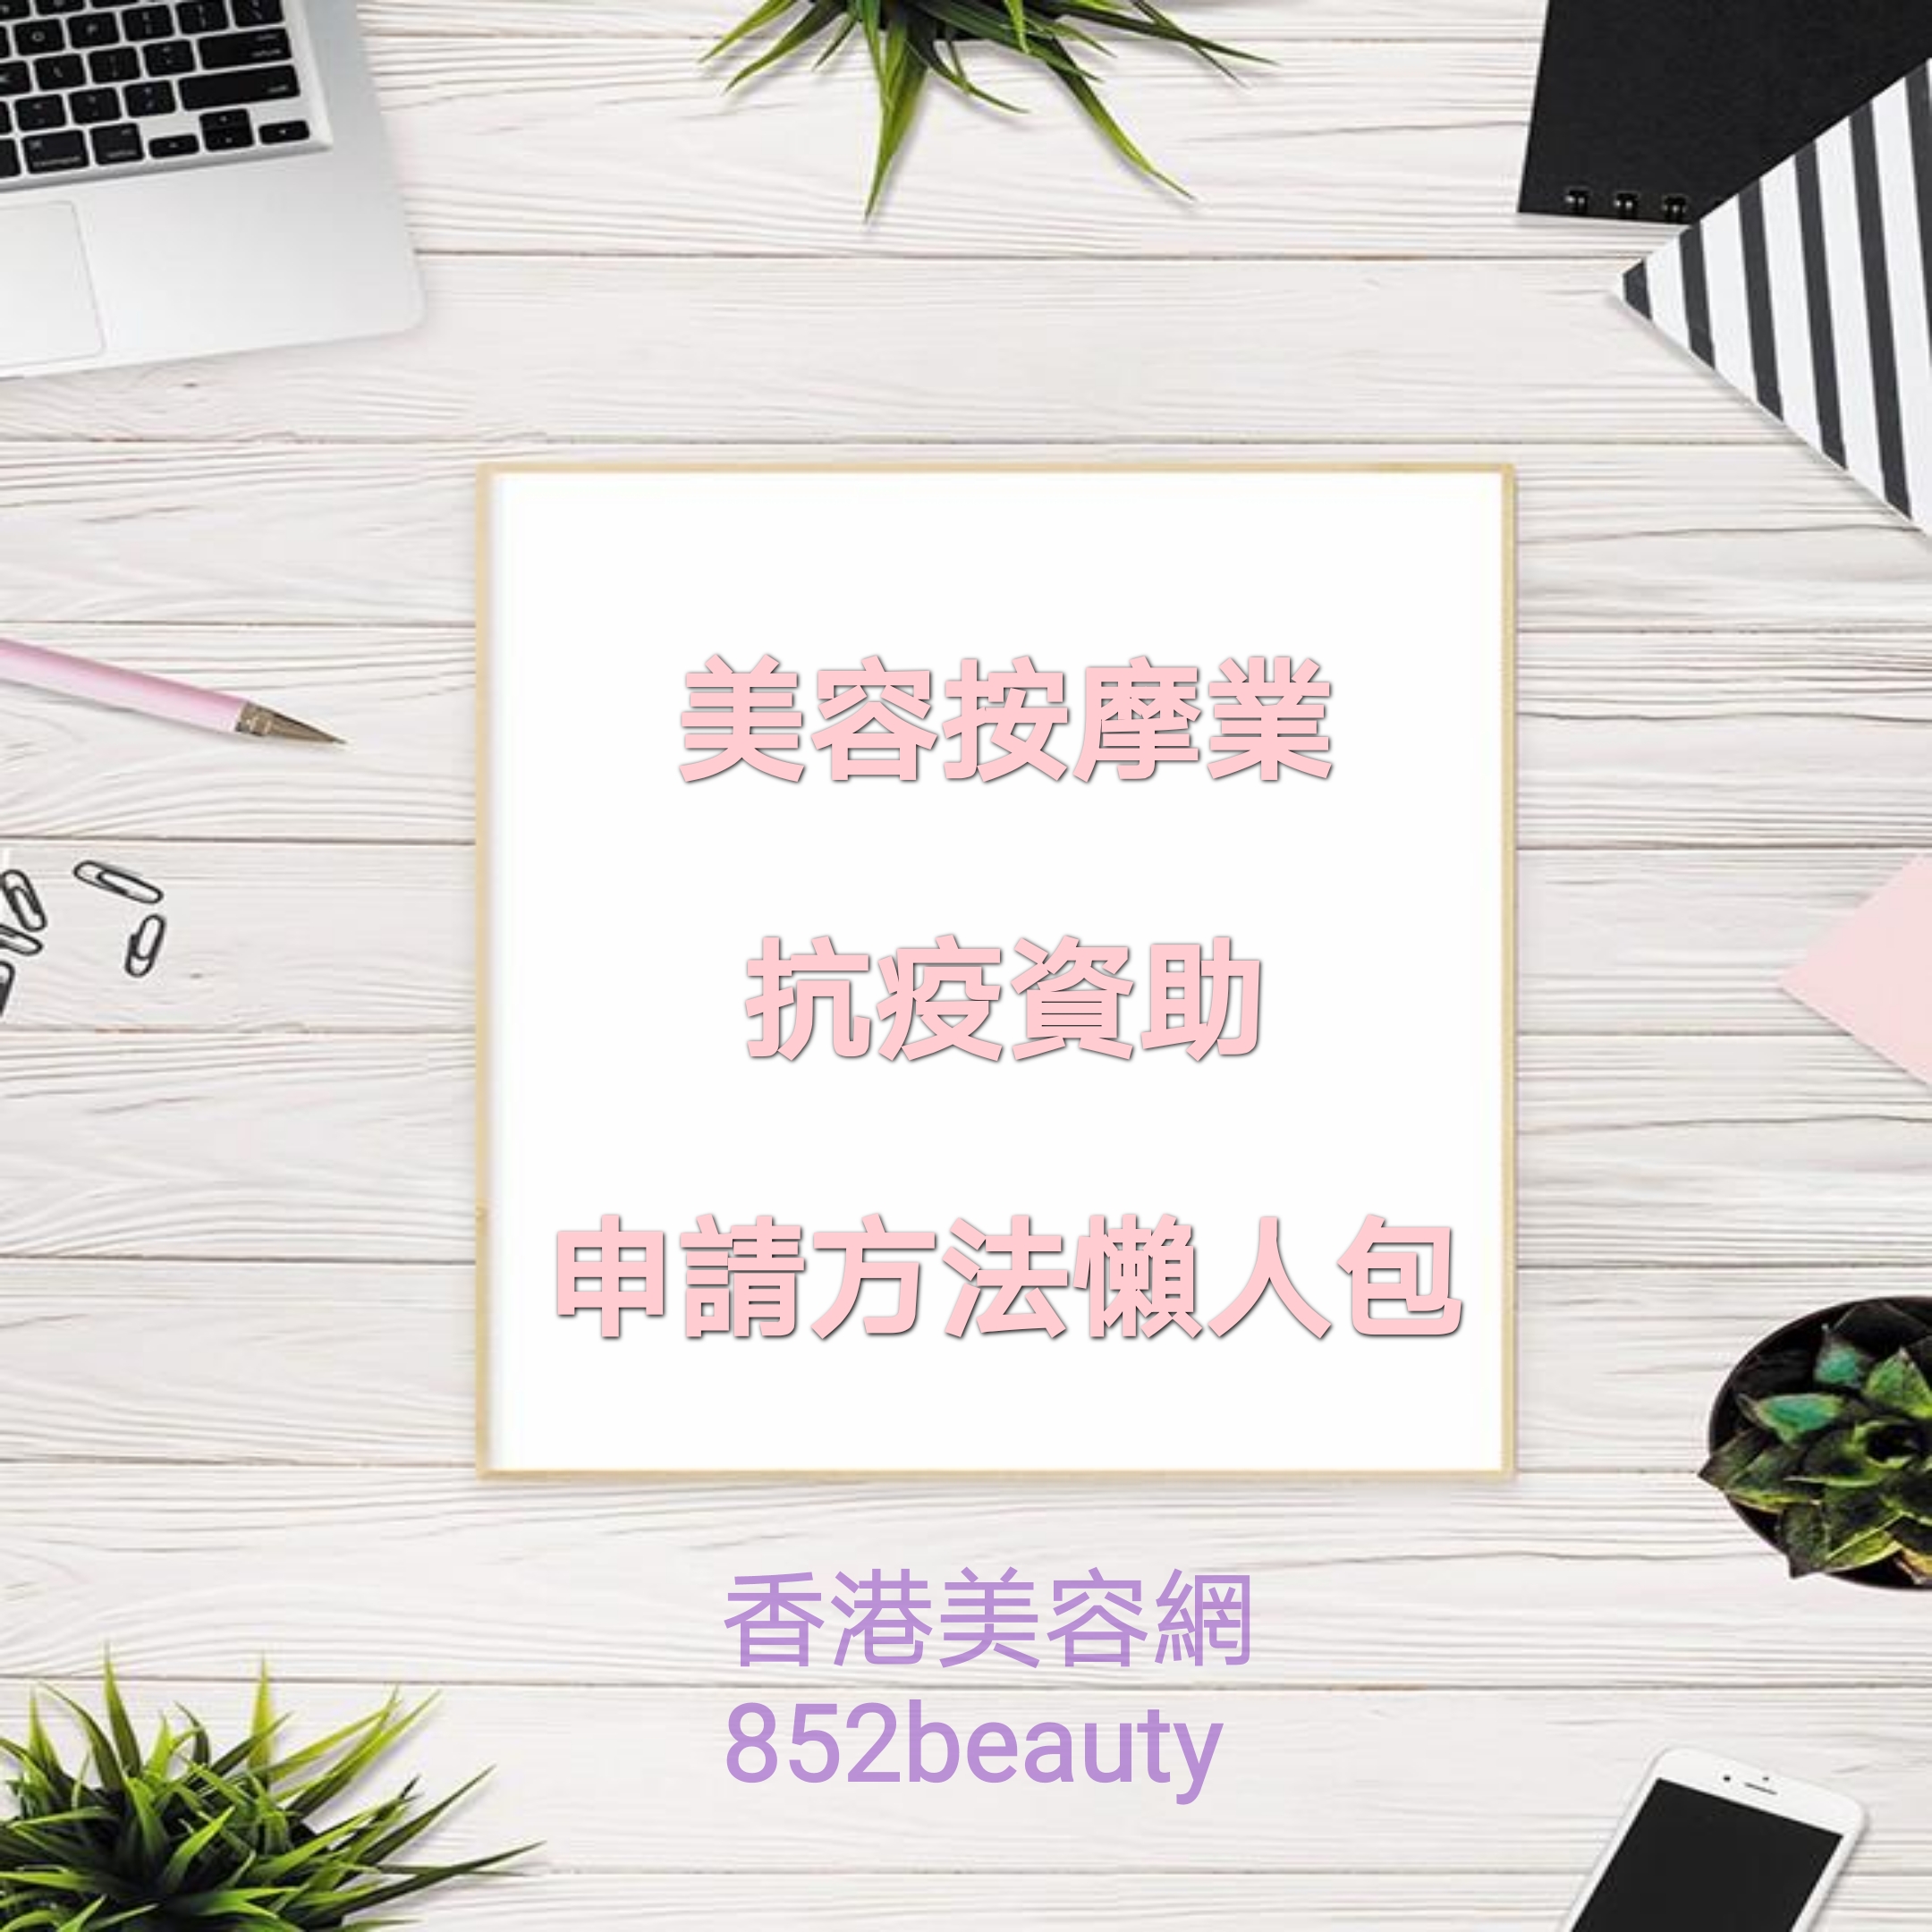 香港美容网 Hong Kong Beauty Salon 最新美容资讯: 【防疫抗疫措施】美容/按摩/美甲業 新一輪資助詳情